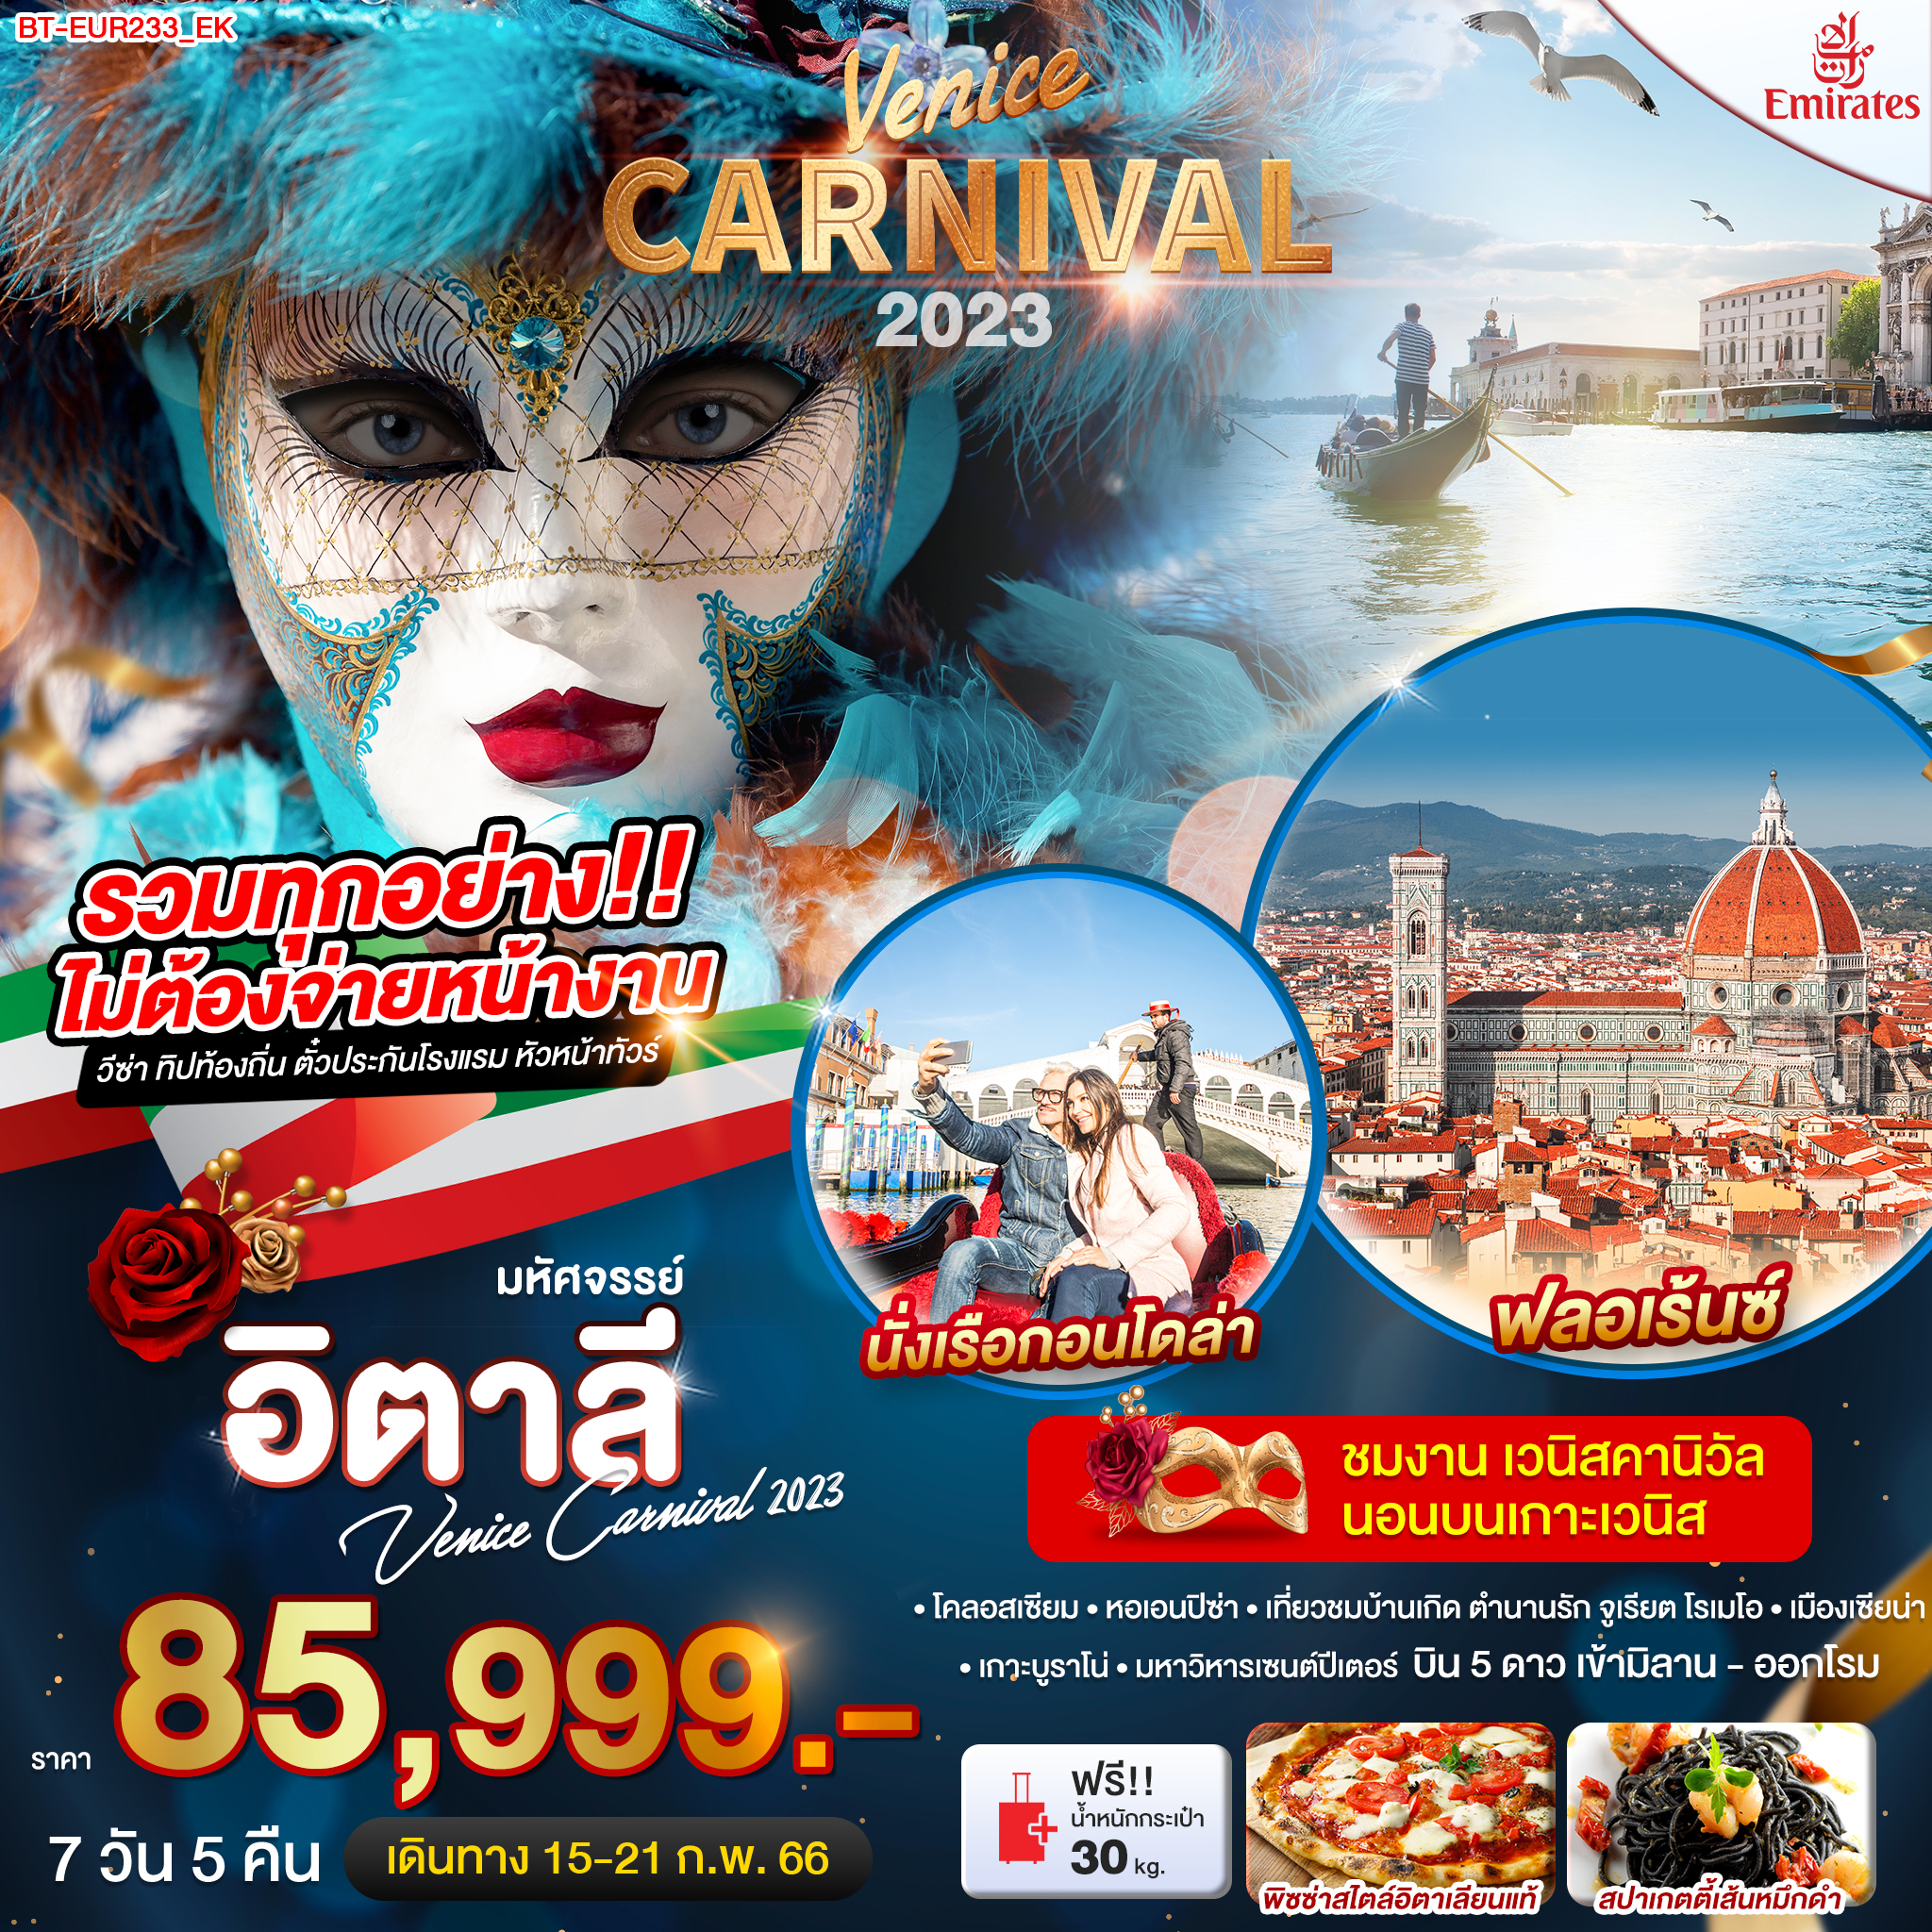 ทัวร์ยุโรปมหัศจรรย์...อิตาลี เวนิส คาร์นิวัล Venice Carnival 2023 7 วัน 5 คืน (EK) ก.พ. 66